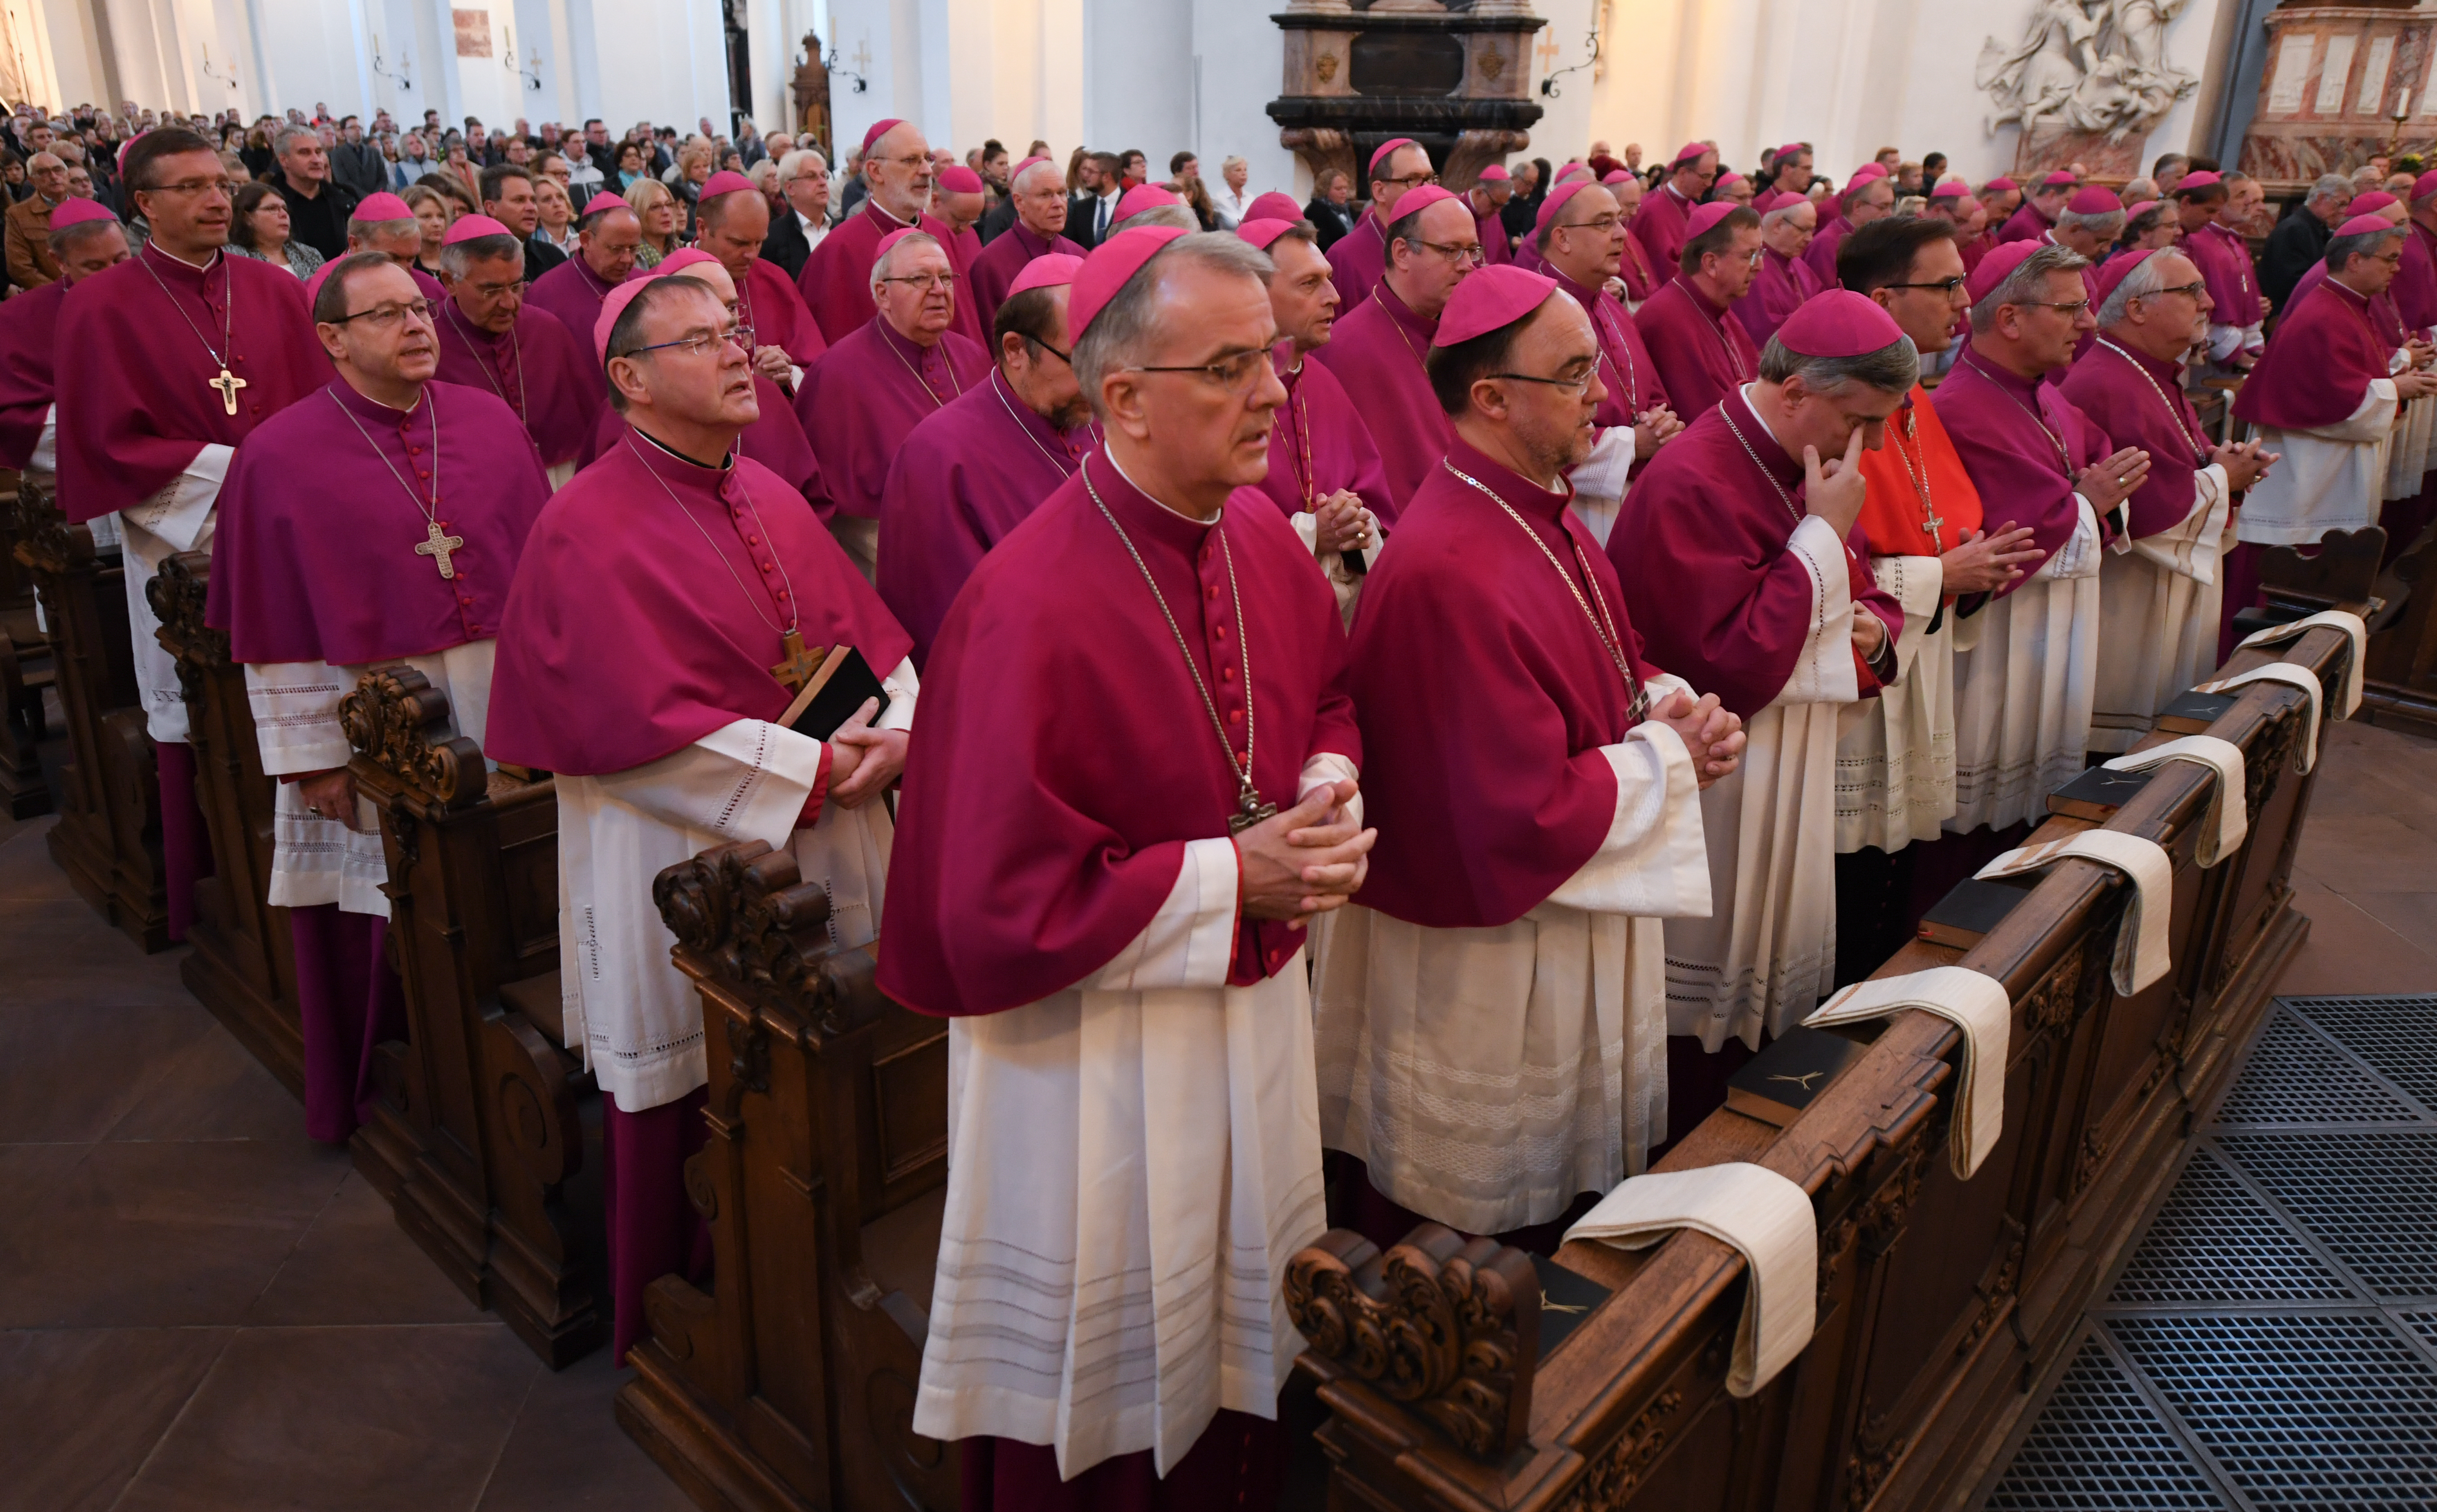 Német püspökök imádkoznak, mielőtt testületileg bocsánatot kérnek a többezer molesztált gyerek miatt